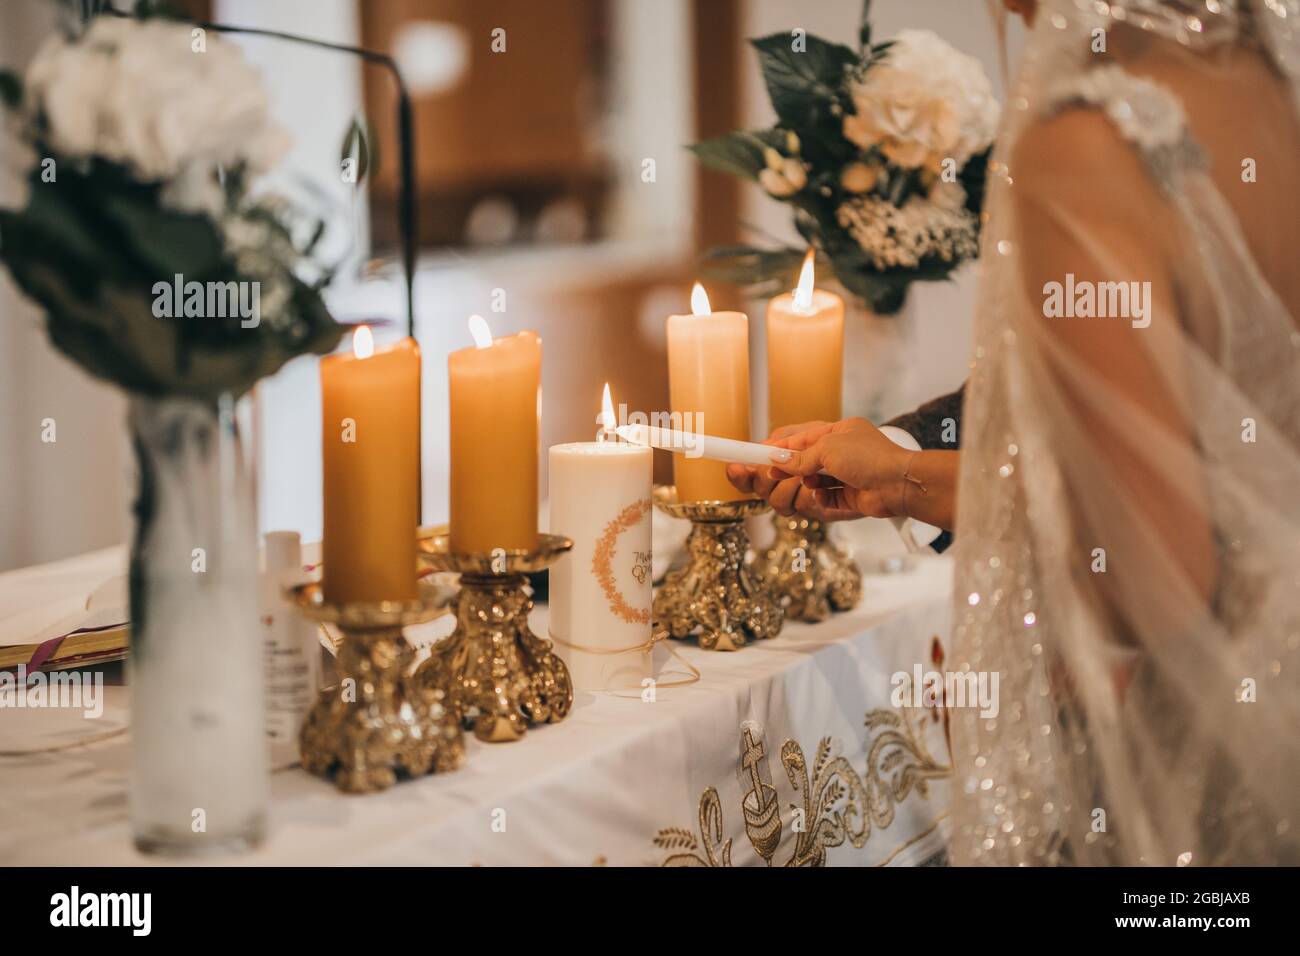 Primo piano delle mani della sposa e dello sposo che bruciano le candele Foto Stock